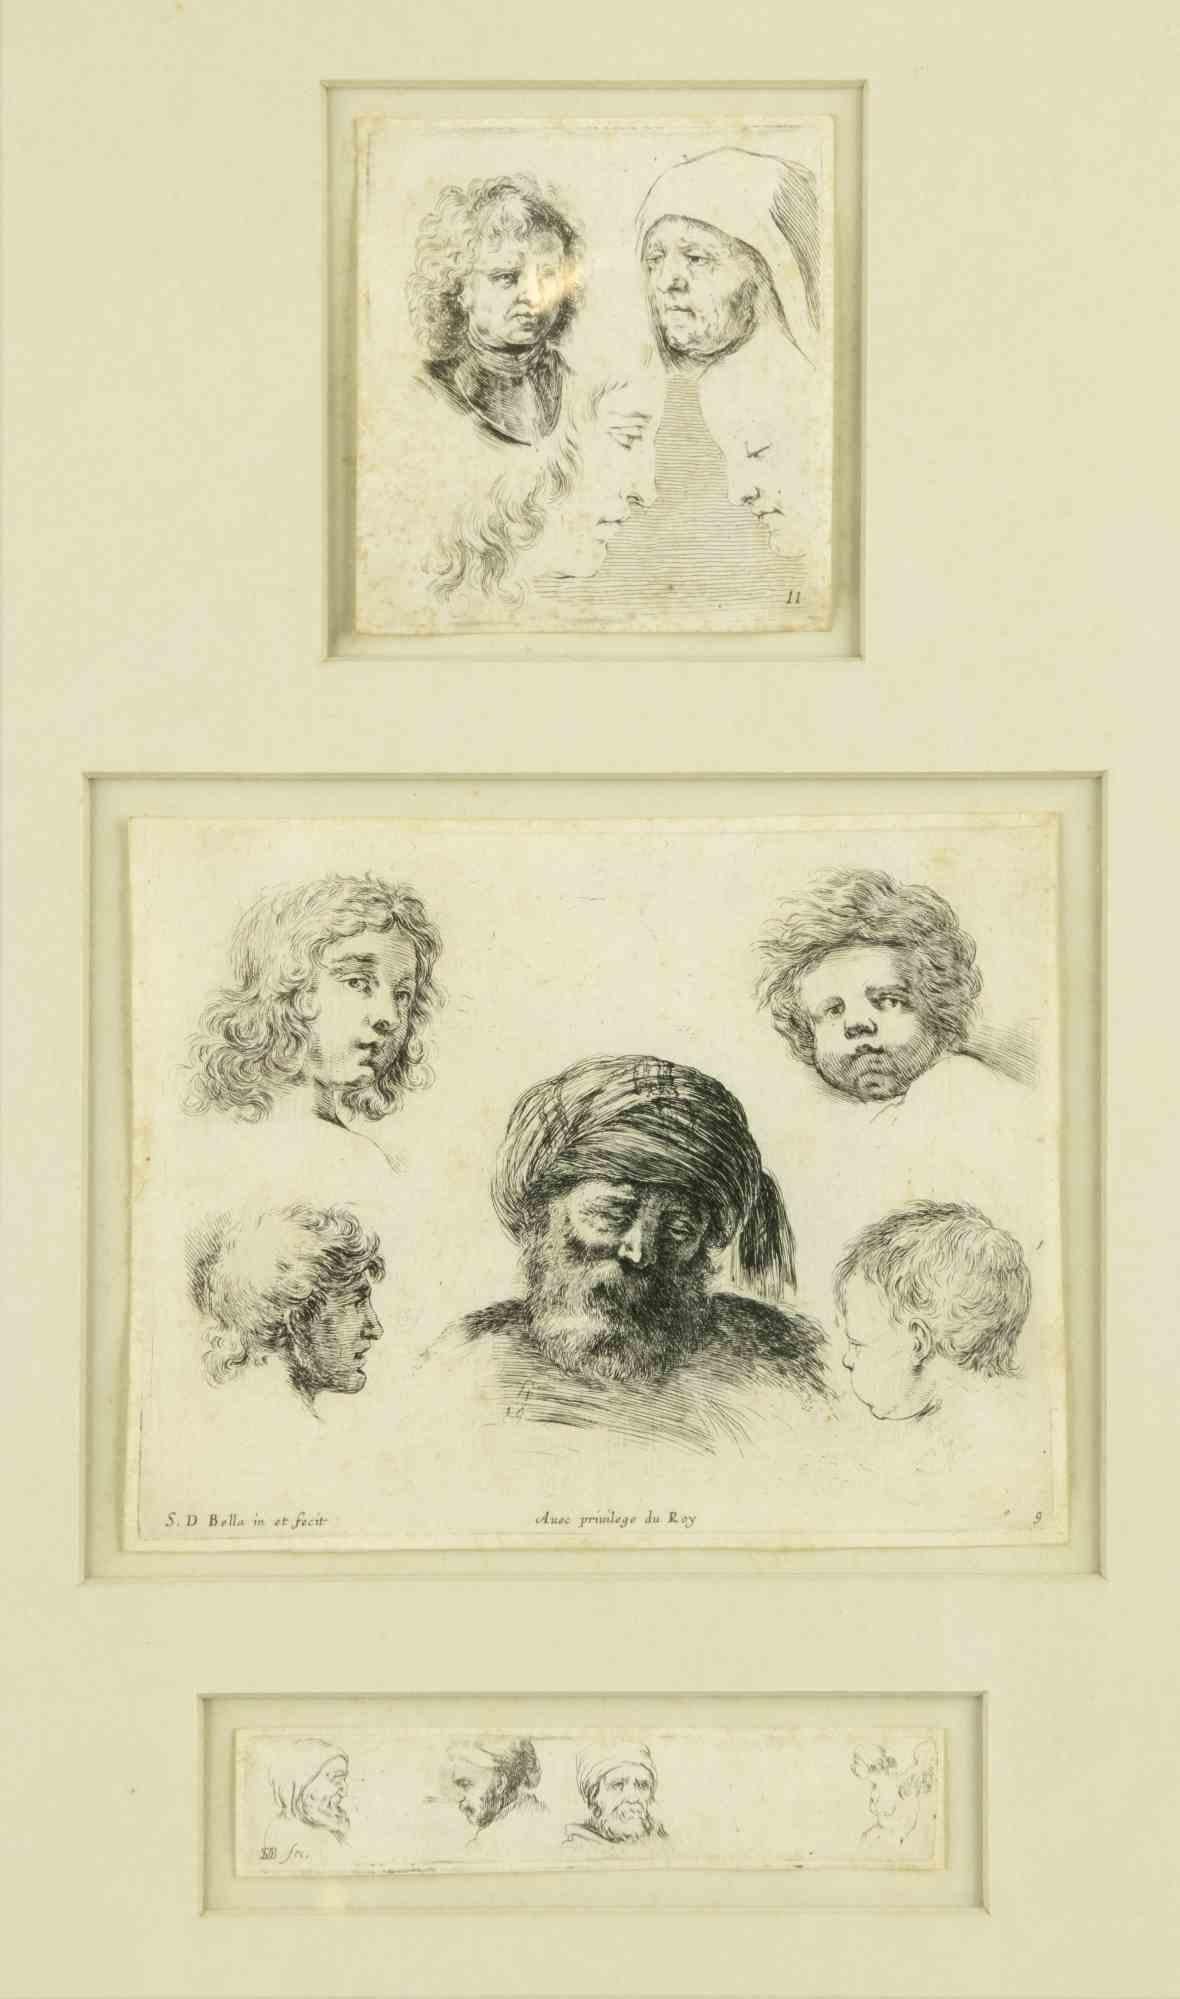 L'étude des visages est une œuvre d'art originale réalisée par Stefano Della bella au 17ème siècle.

Gravure en noir et blanc. La gravure est divisée en 2 panneaux, les mesures de ceux-ci à partir du haut sont : 8 x 8 cm et 2 x 12 cm

Inclut le